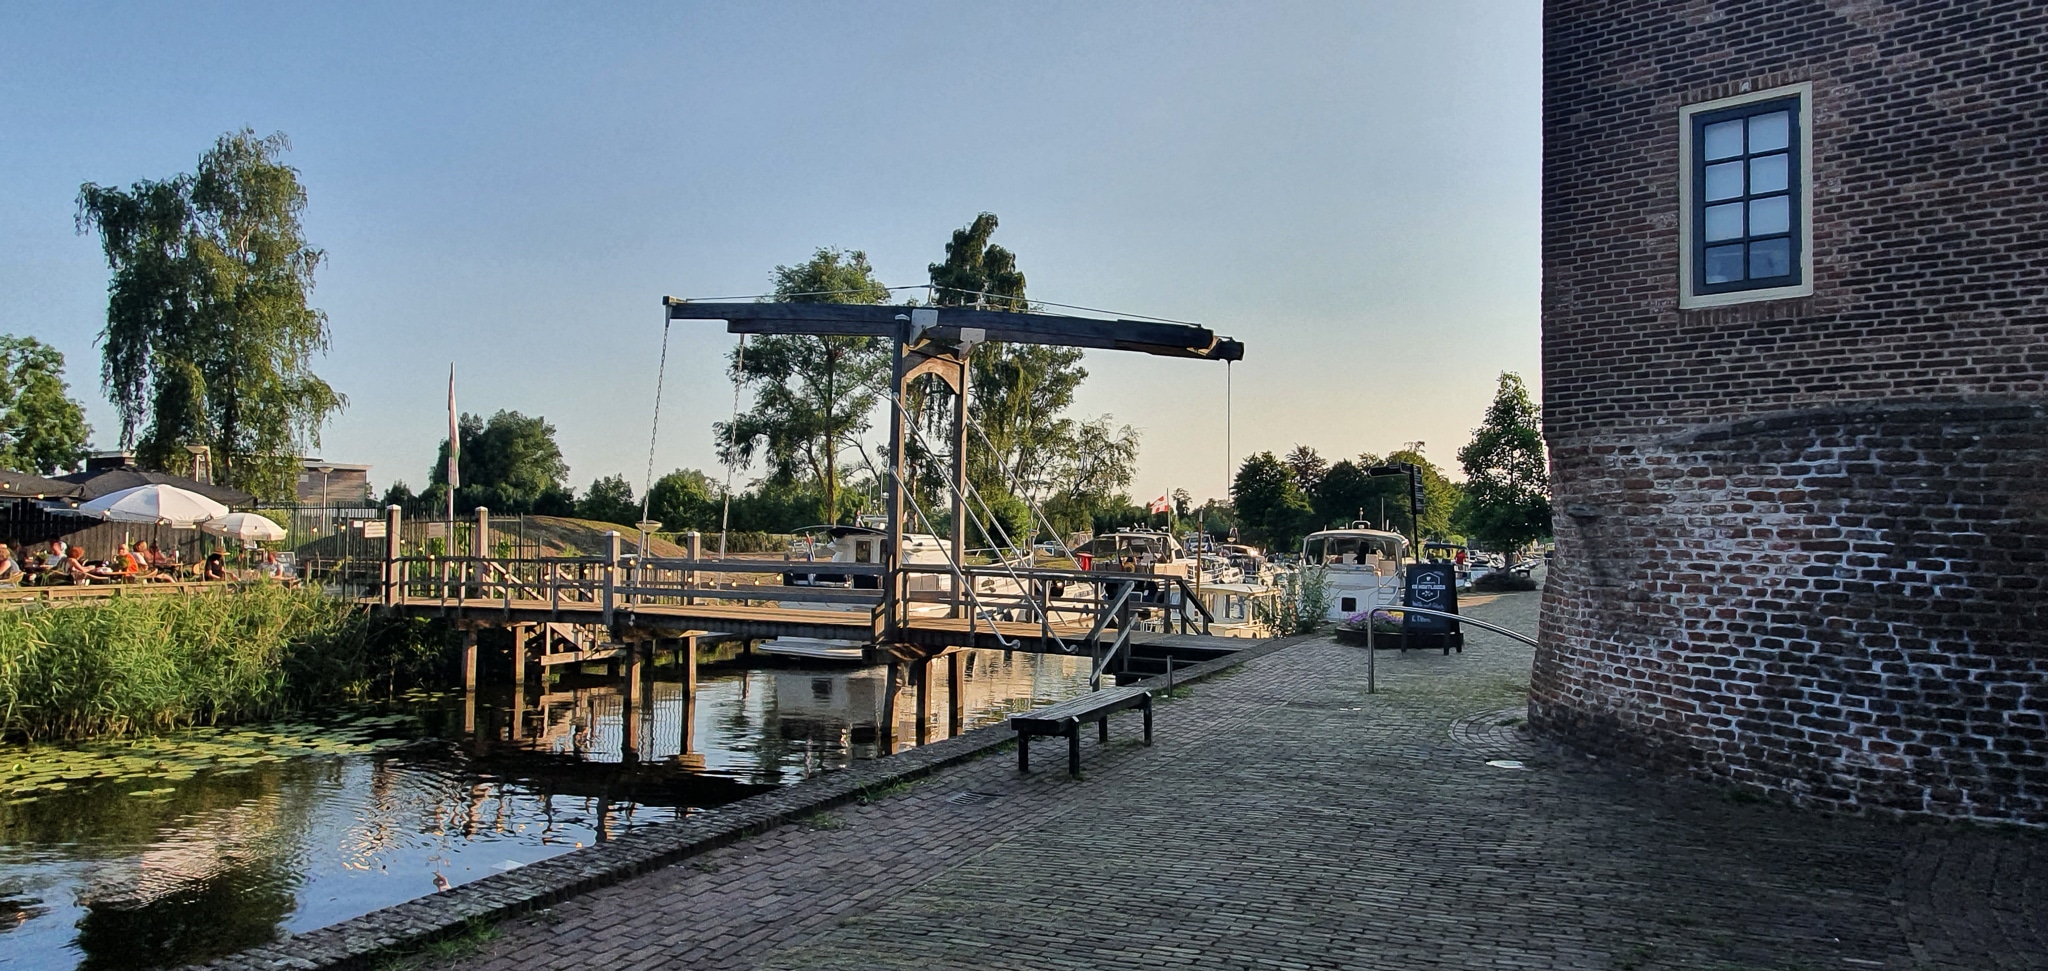 Yachthafen in Leerdam, im Vordergrund eine Brücke, dahinter Boote